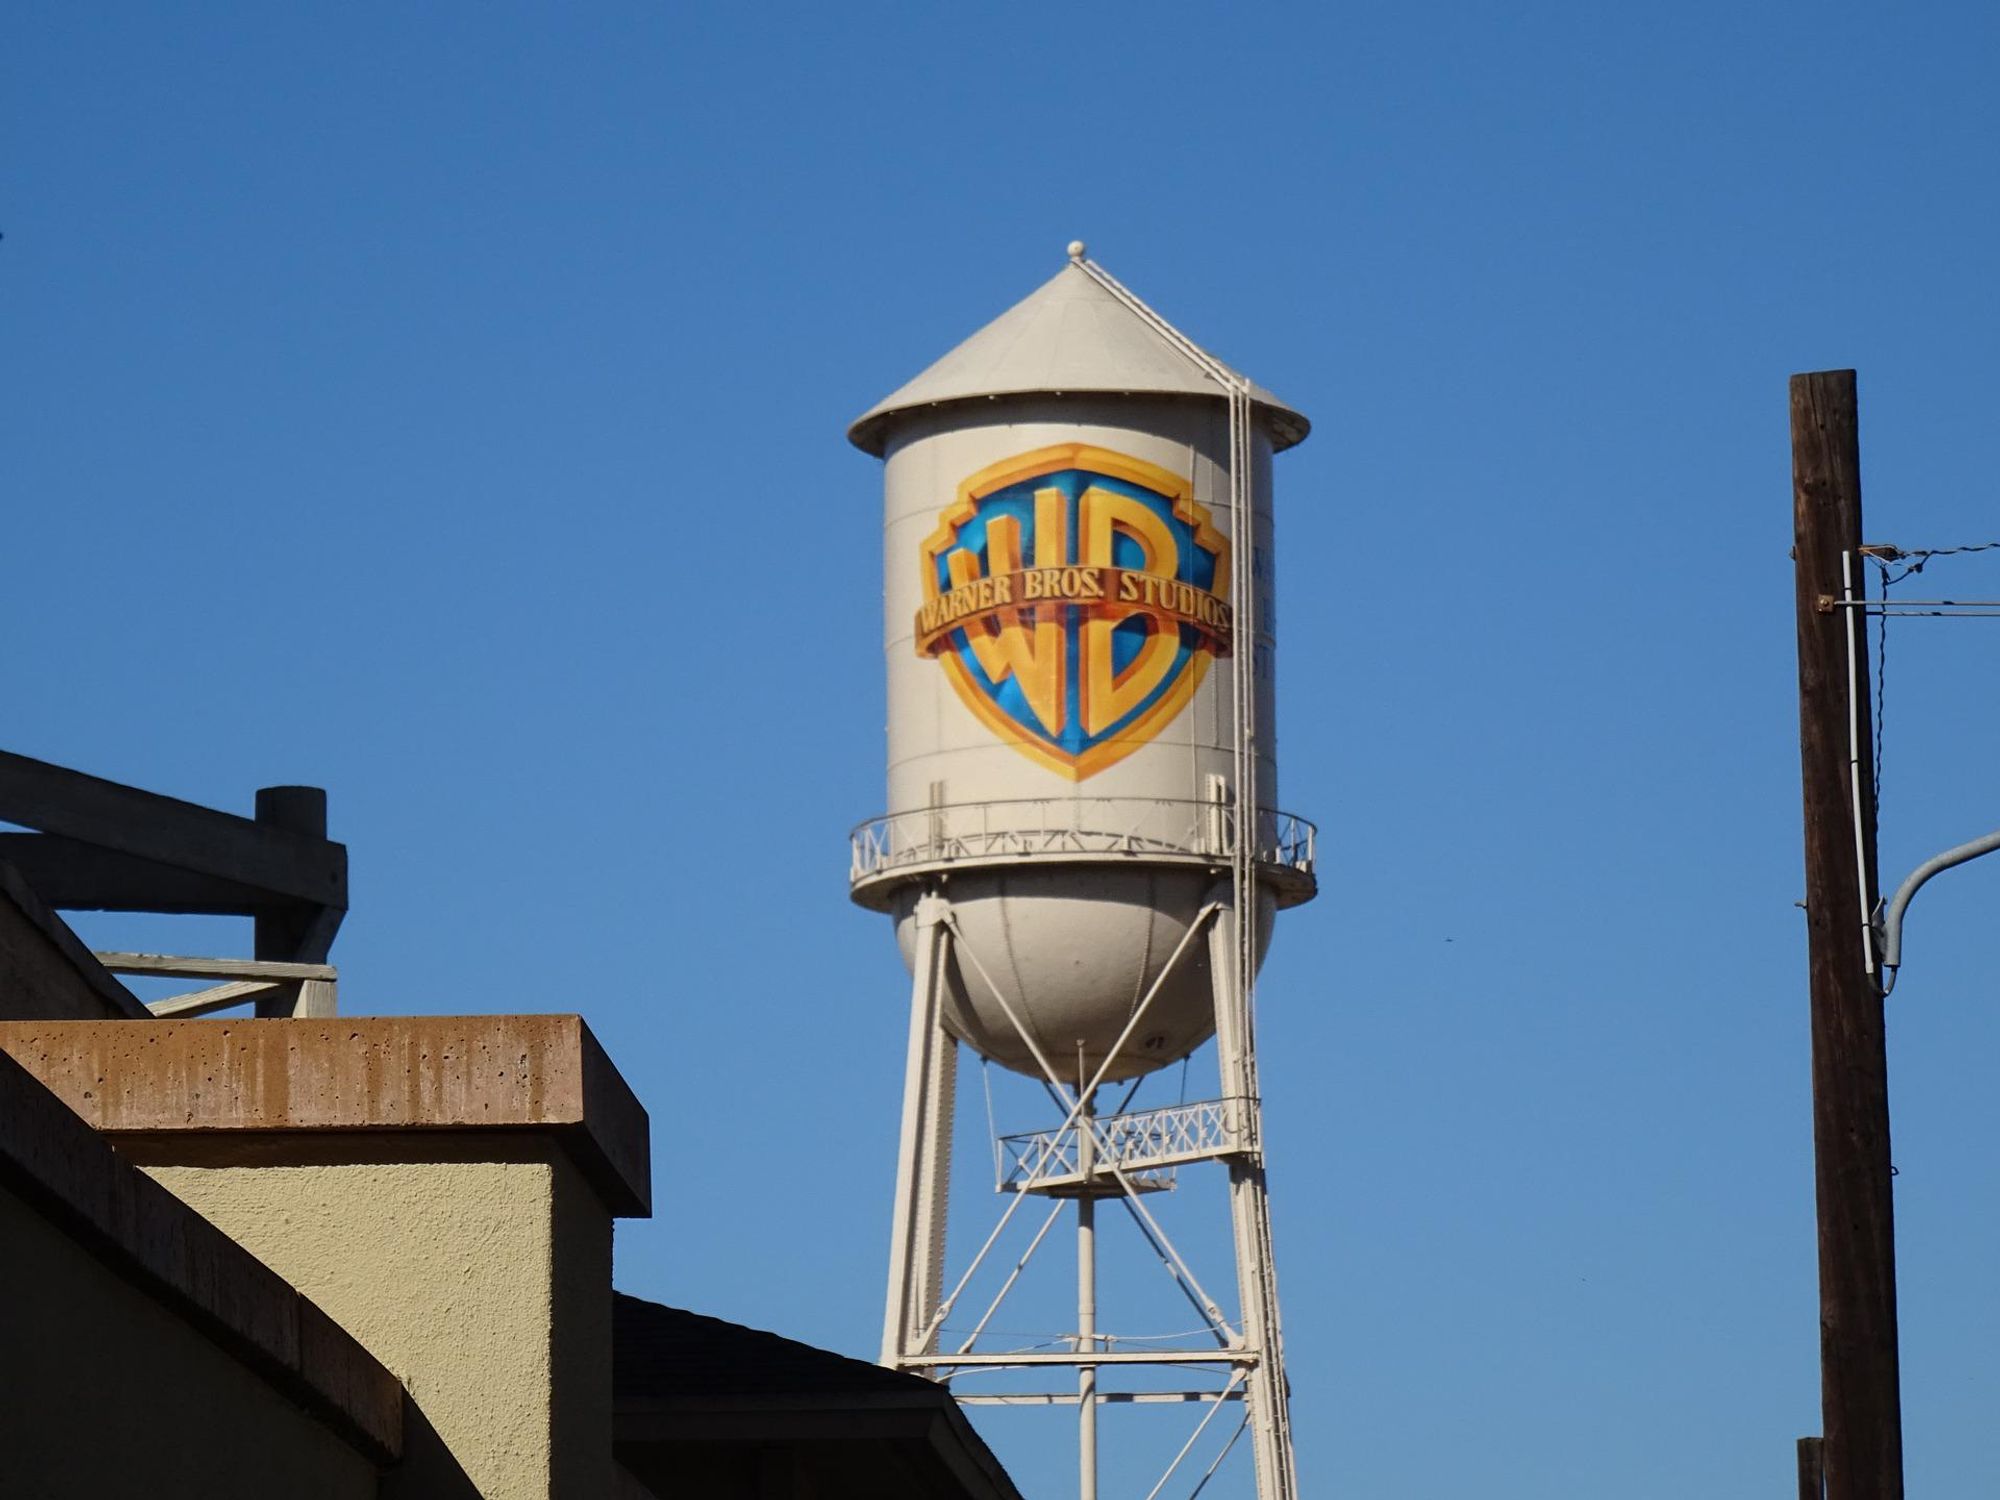 Warners Bros. Studio Water Tower.​